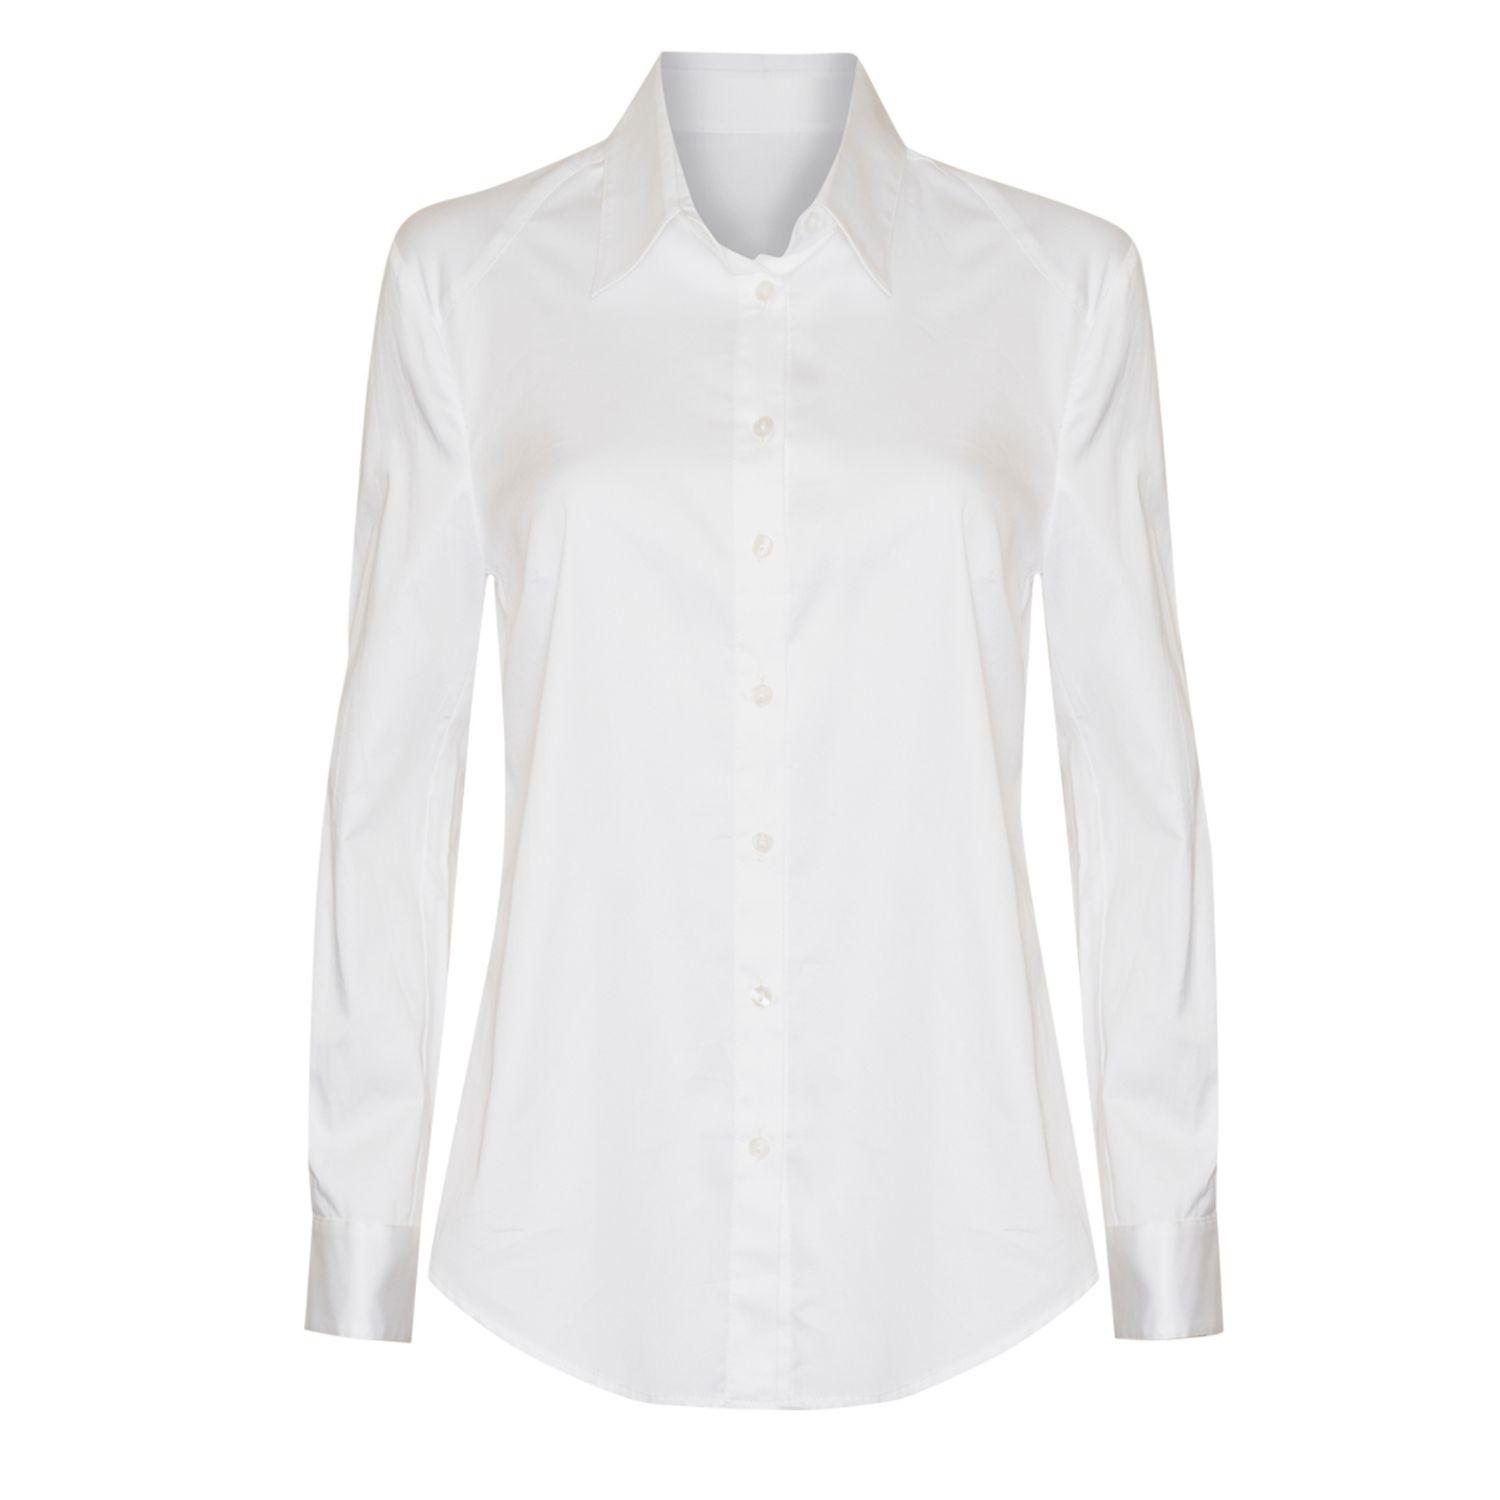 Women’s Classic Shirt In White Large Sacha Drake